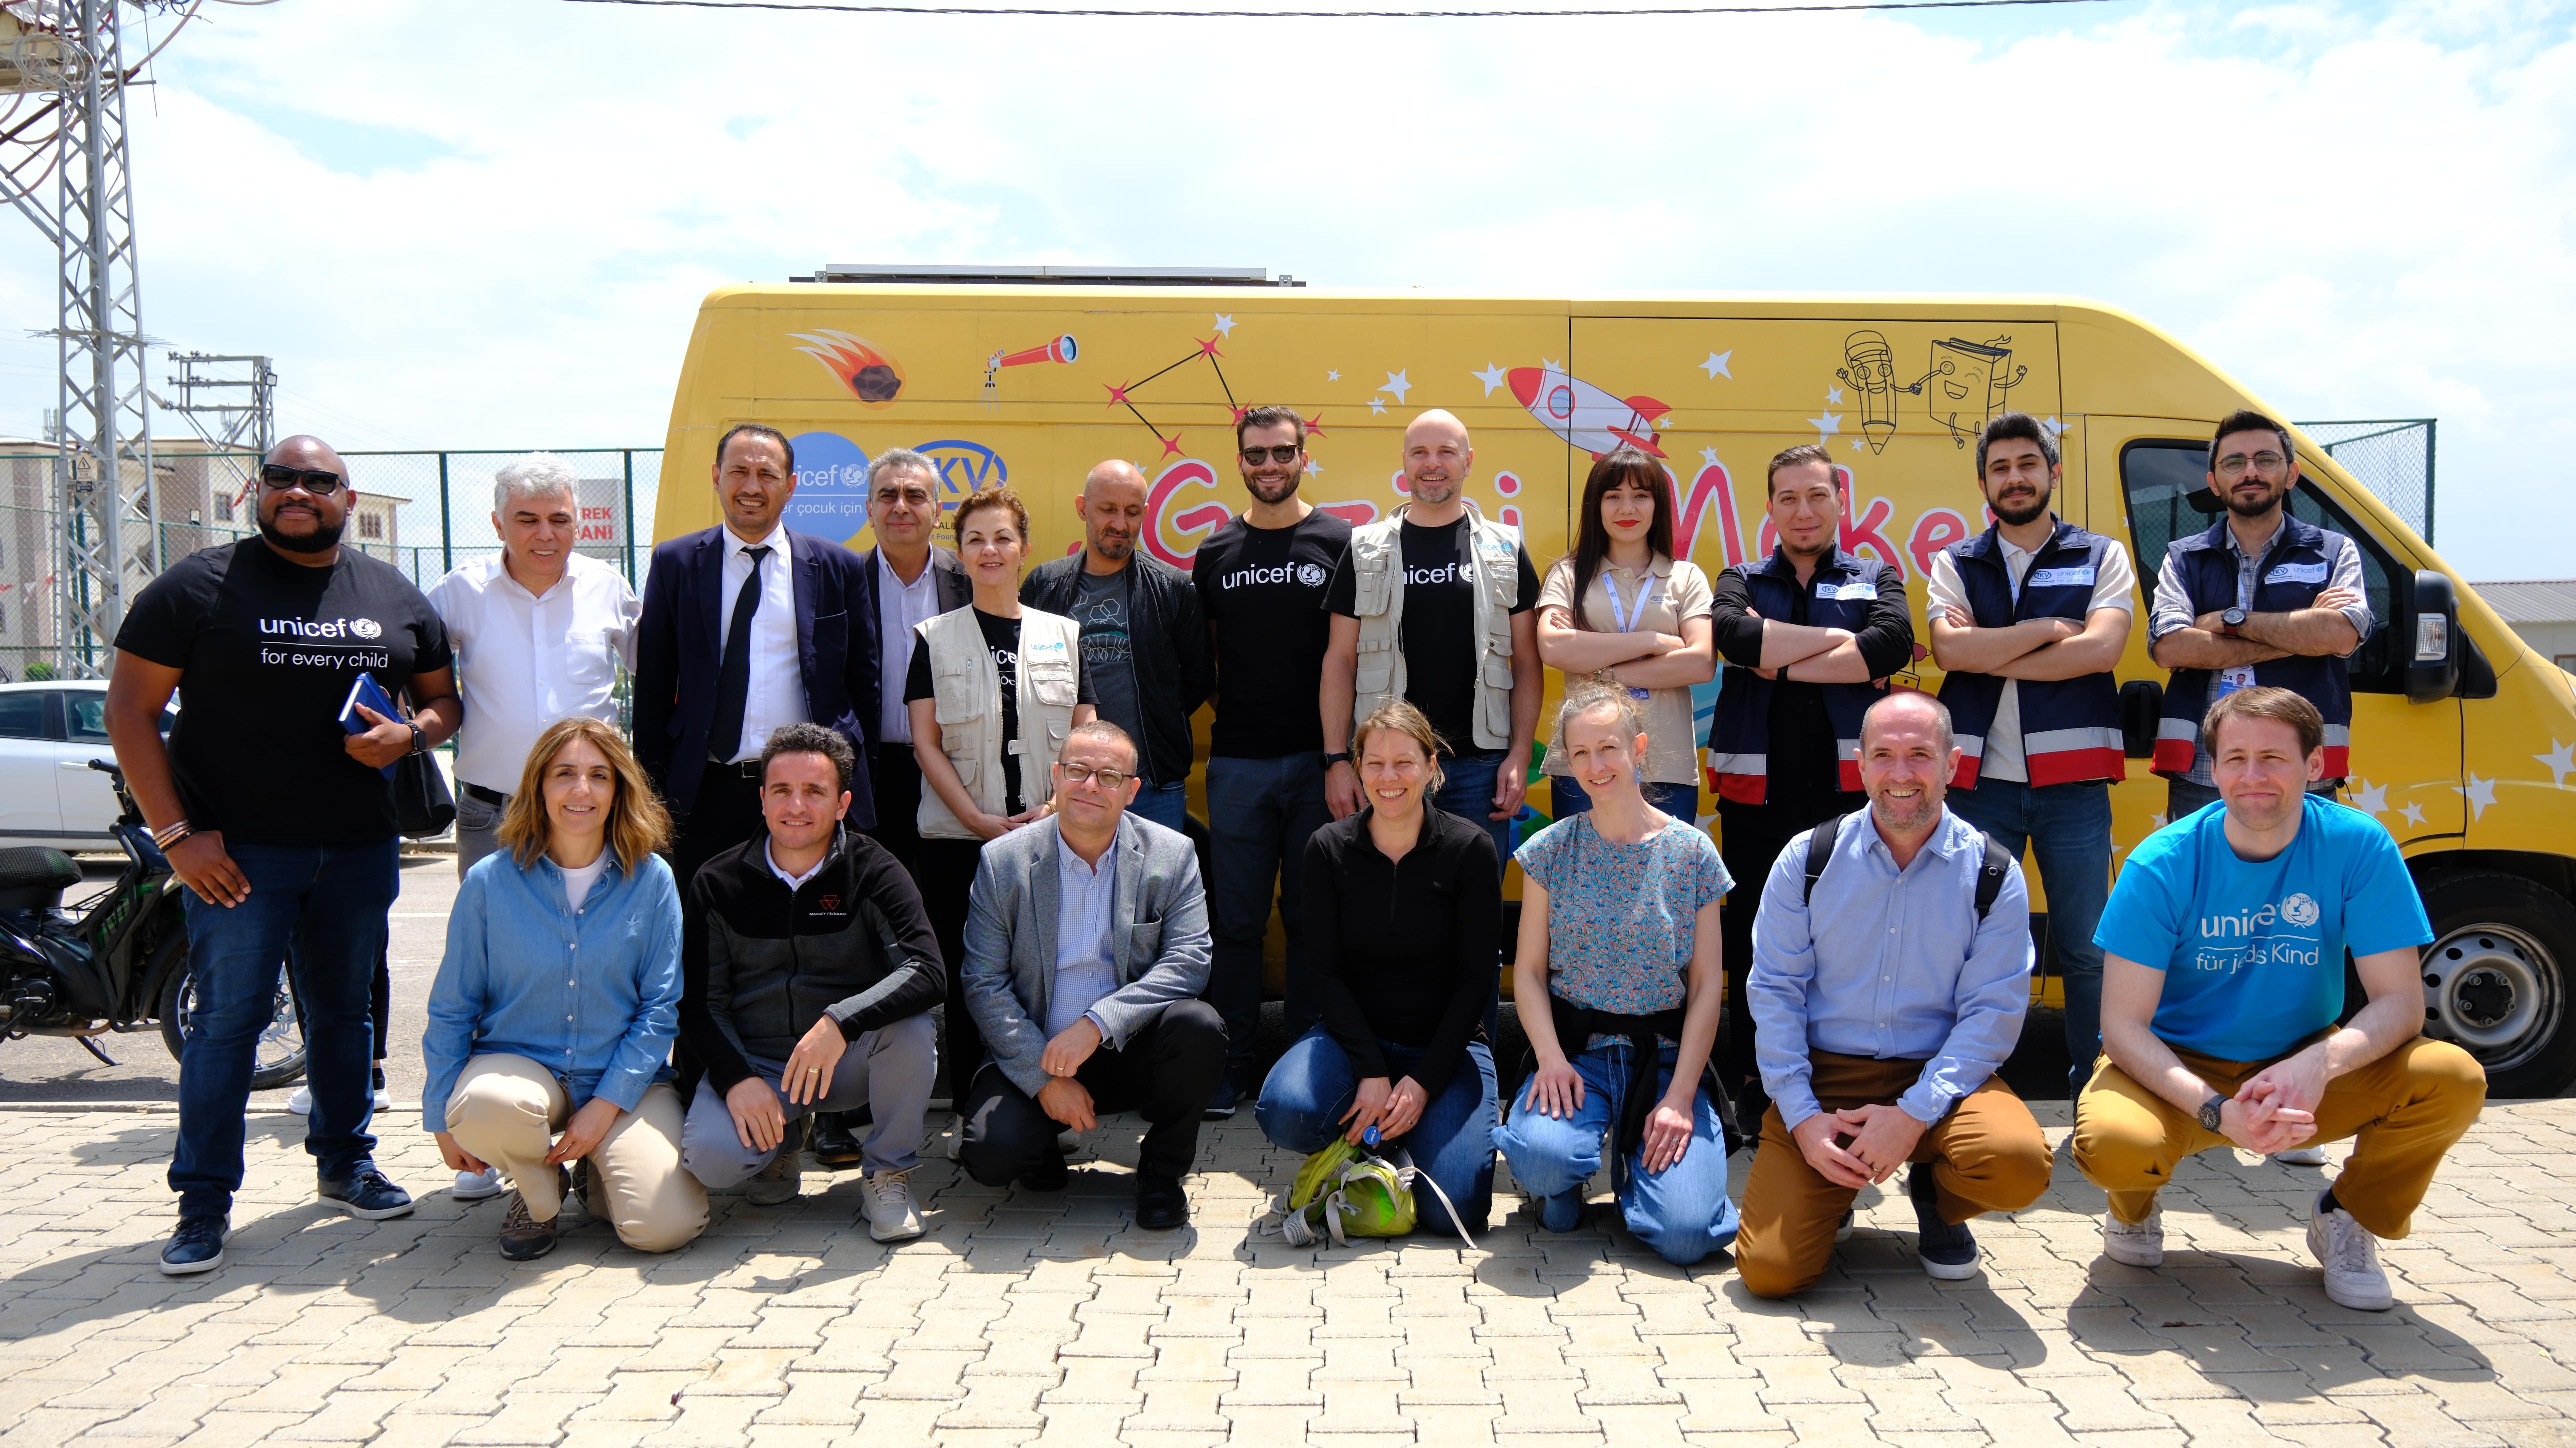 UNICEF Almanya Milli Komitesi ve AGCO Corporation Heyeti, Gaziantepteki Mobil Maker Programını İnceledi